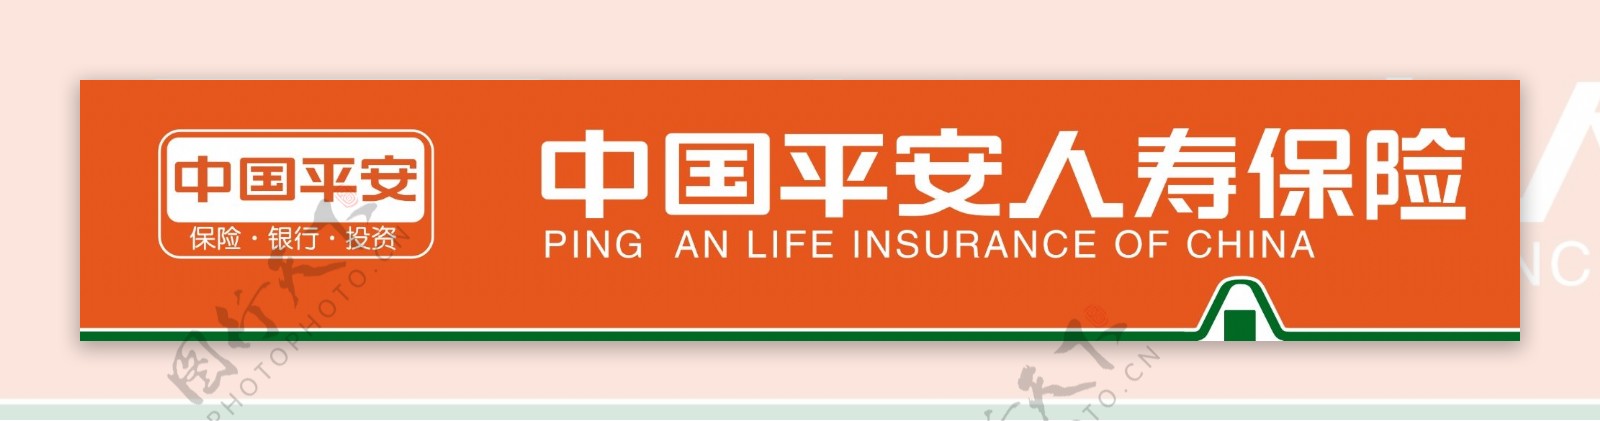 中国平安人寿保险新标志图片